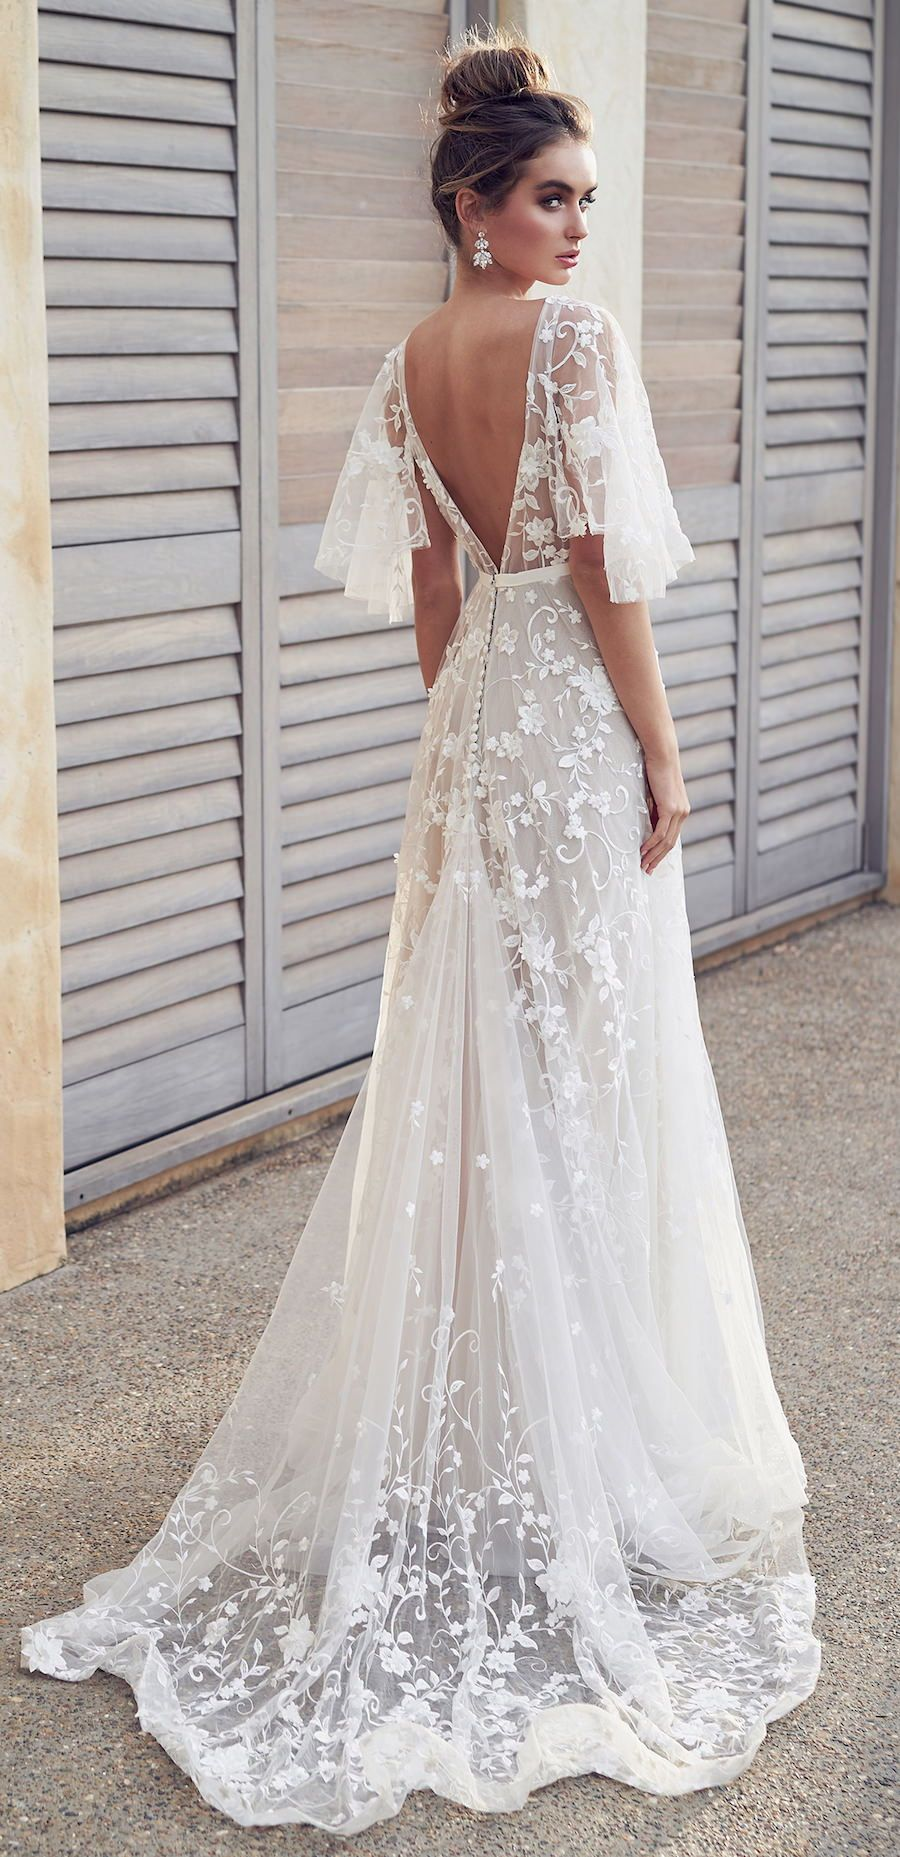 2019 Romantic White Flower Appliques Wedding Dress,Lace Long Bridal Dresses,Wedding Dress -   15 wedding Gown romantic ideas